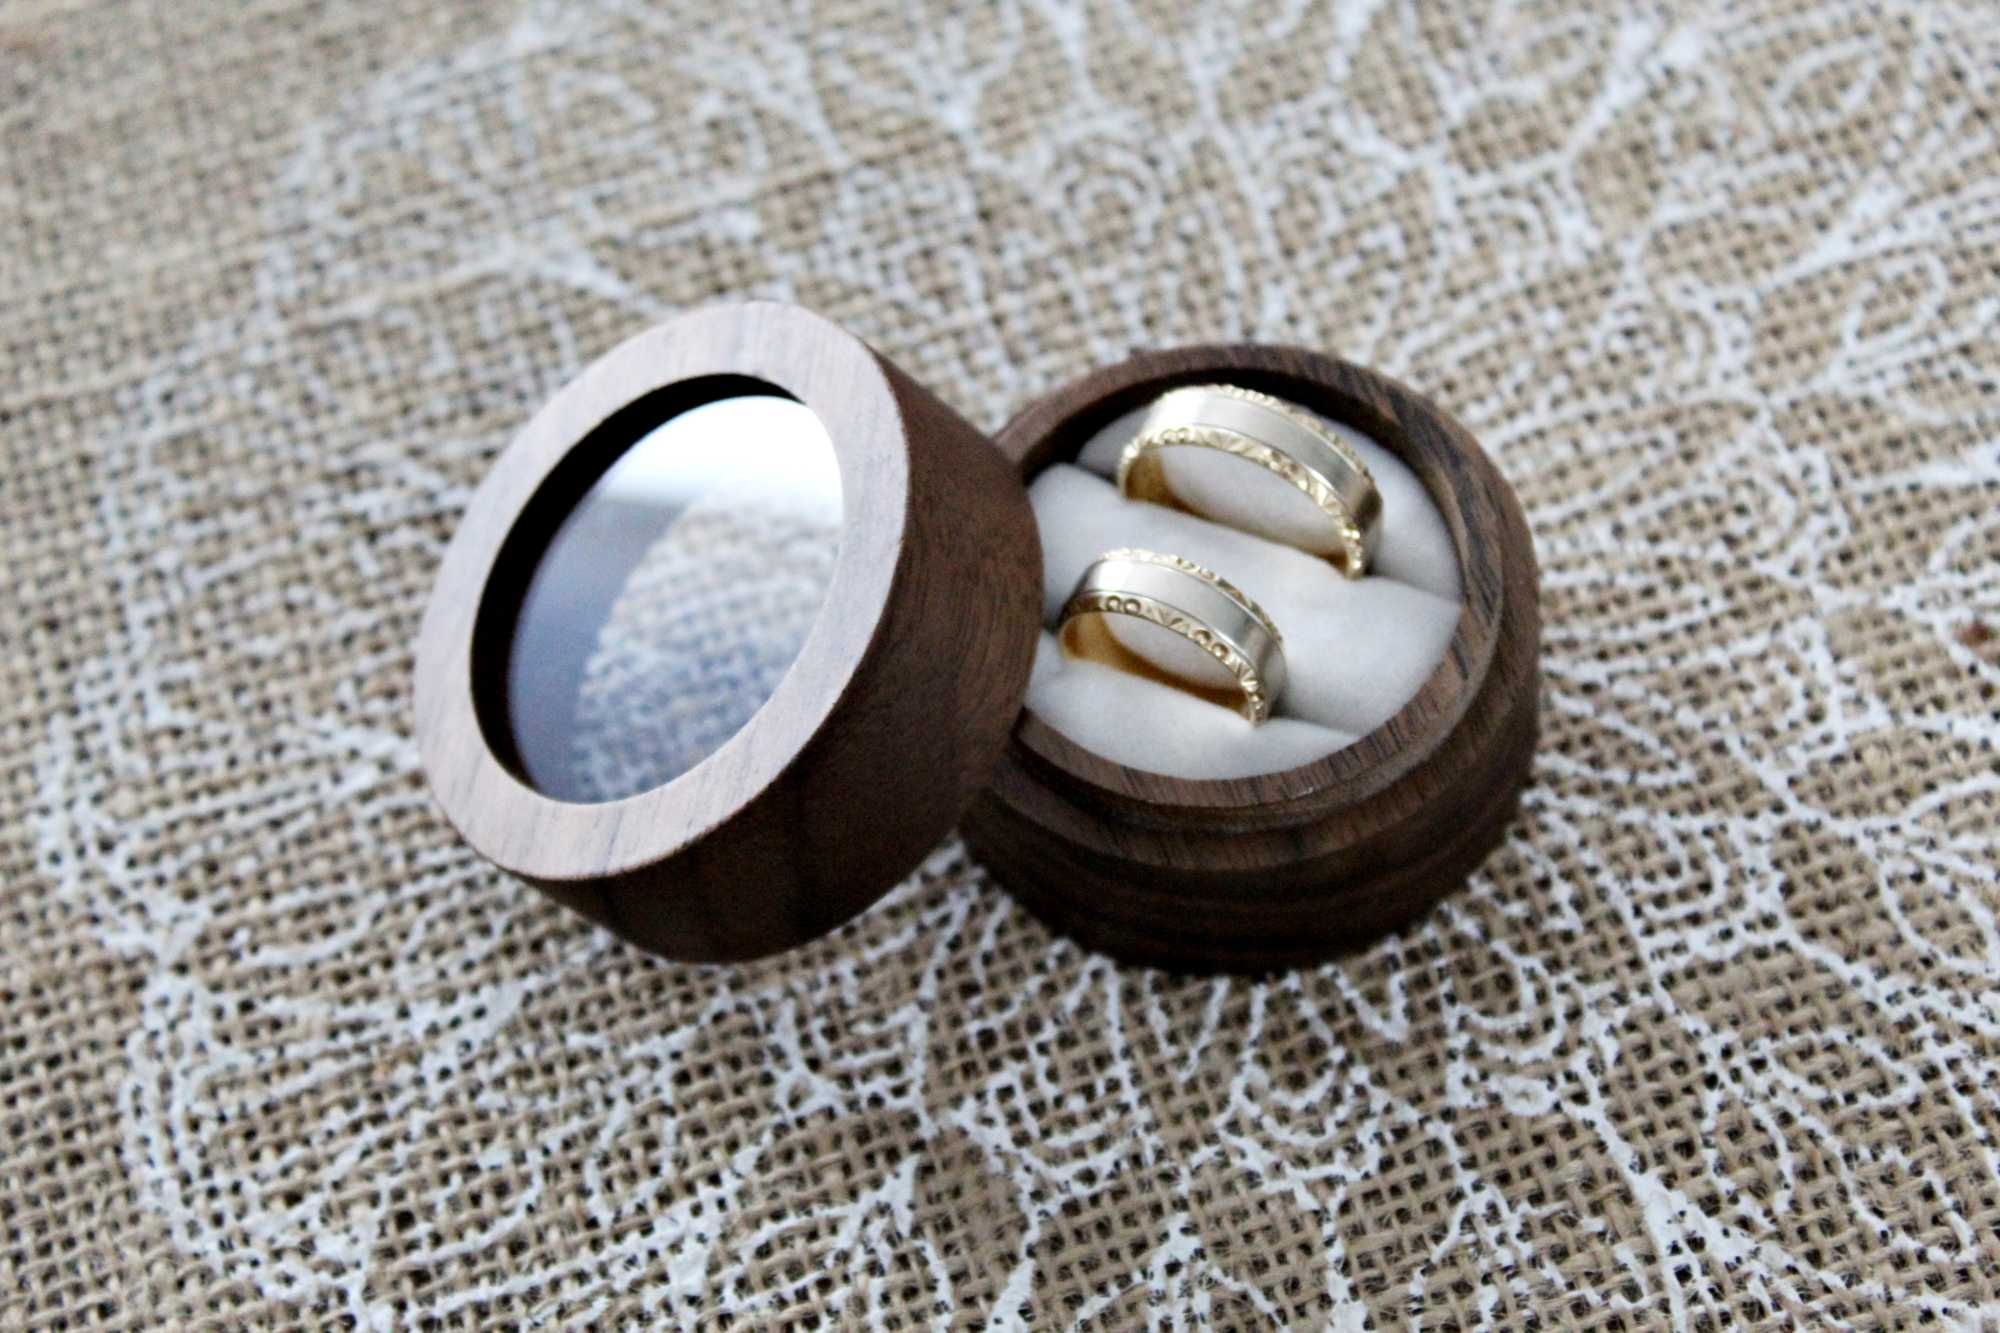 Małe pudełko na obrączki - drewniane rustykalny/boho ślub - okrągłe